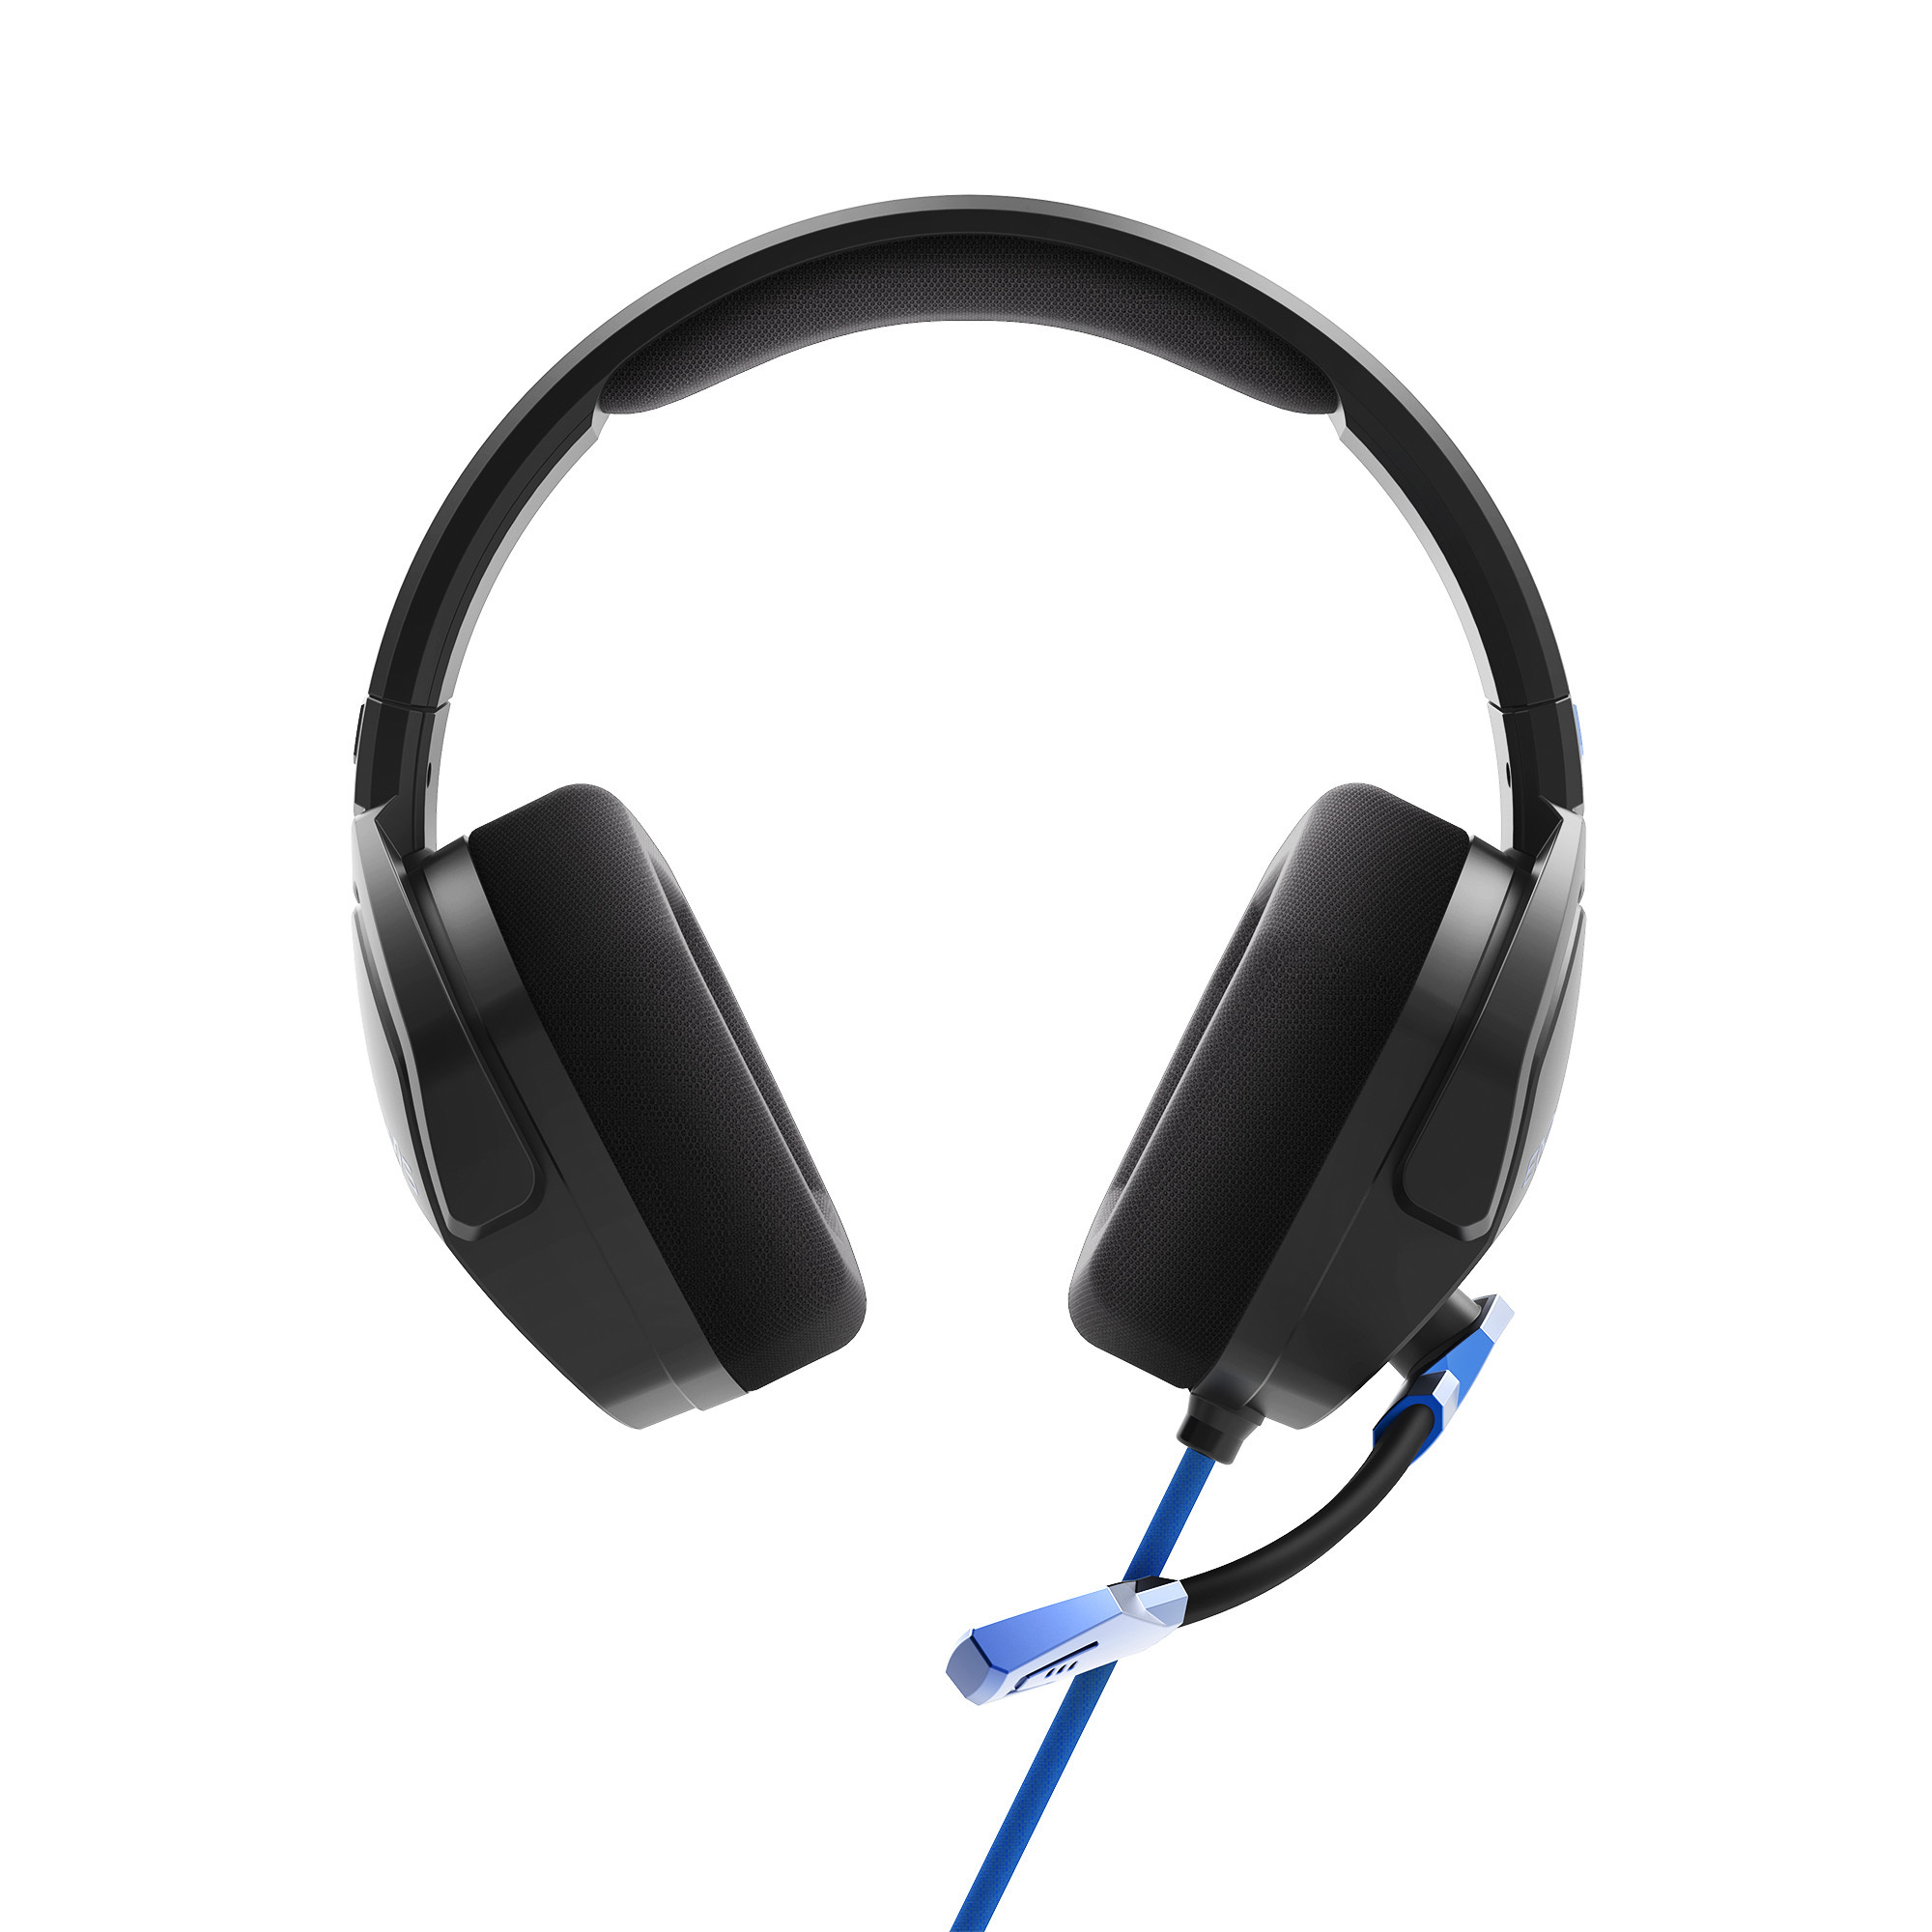 ESG 3 Blue Thunder gaming headset